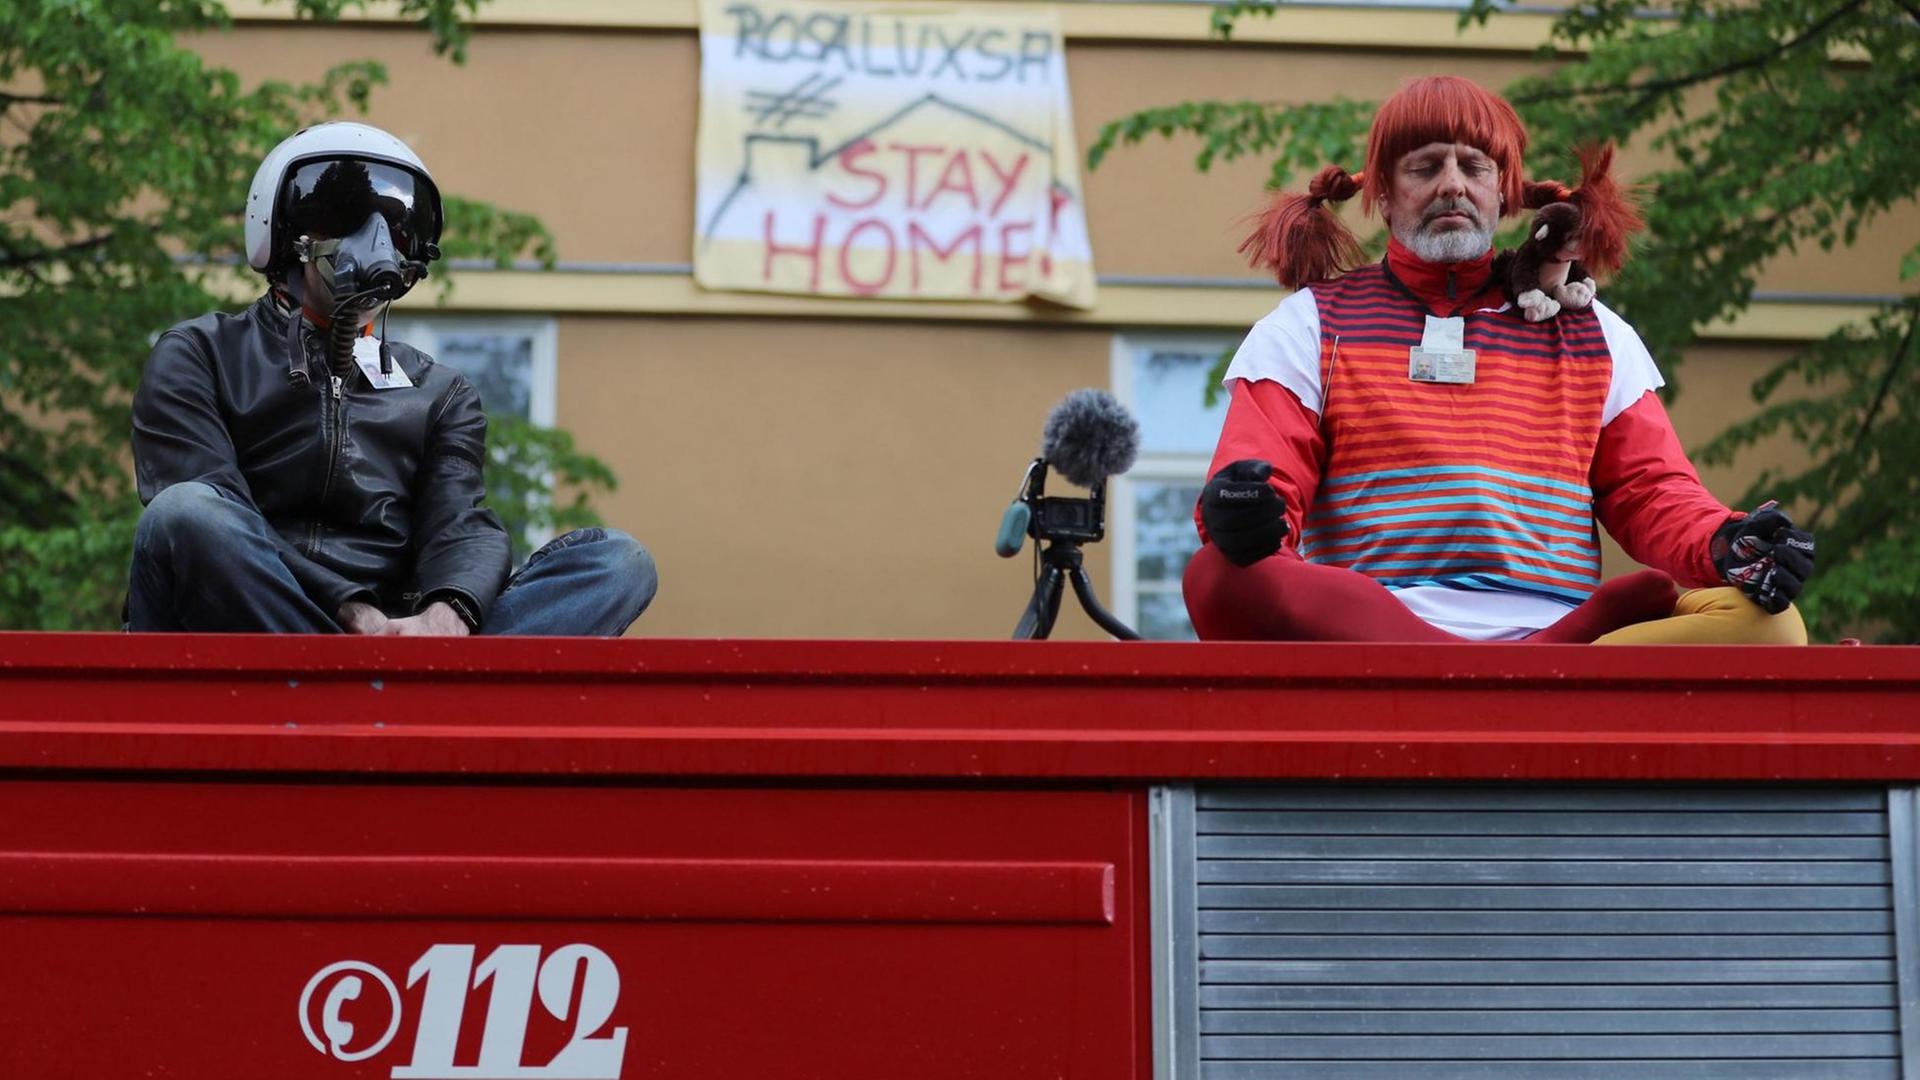 Zwei Demonstranten sitzten verkleidet auf einem ehemaligen Feuerwehrfahrzeug am Rosa-Luxemburg-Platz bei einer Kundgebung gegen die Corona-Einschränkungen.